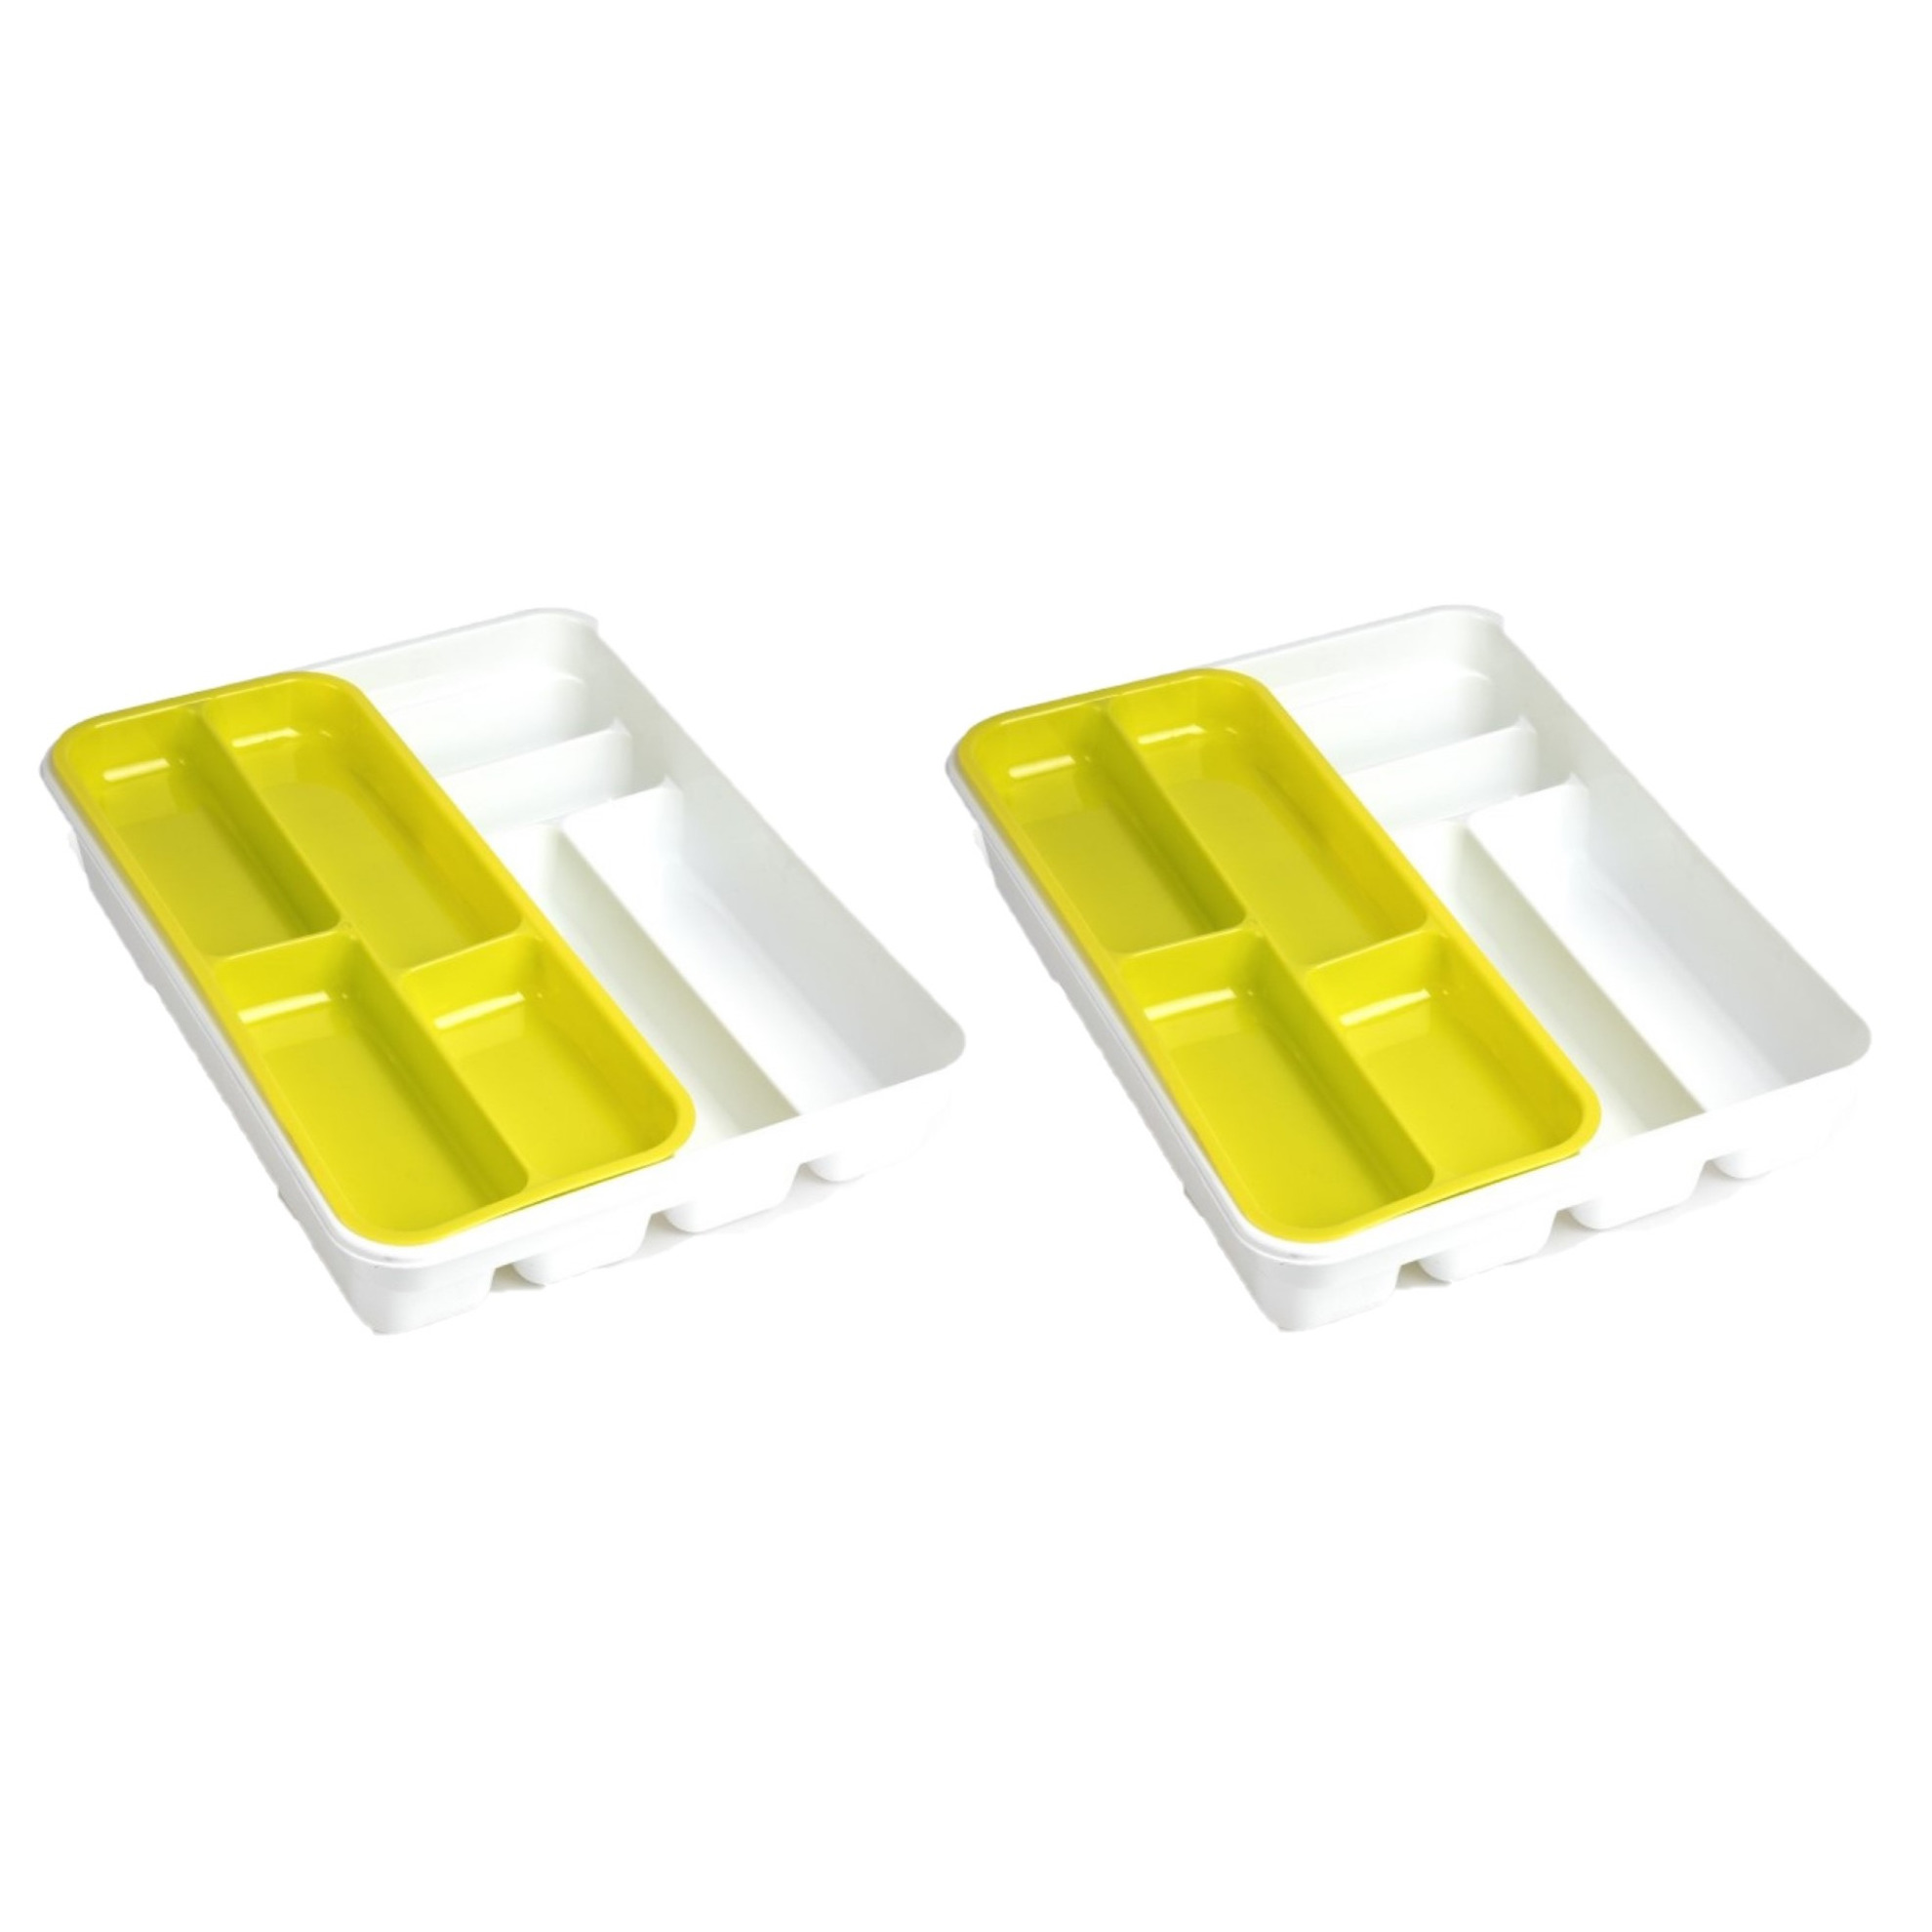 2x stuks witte bestekbak inzetbakken met geel oplegbakje kunststof L40 x B30 cm